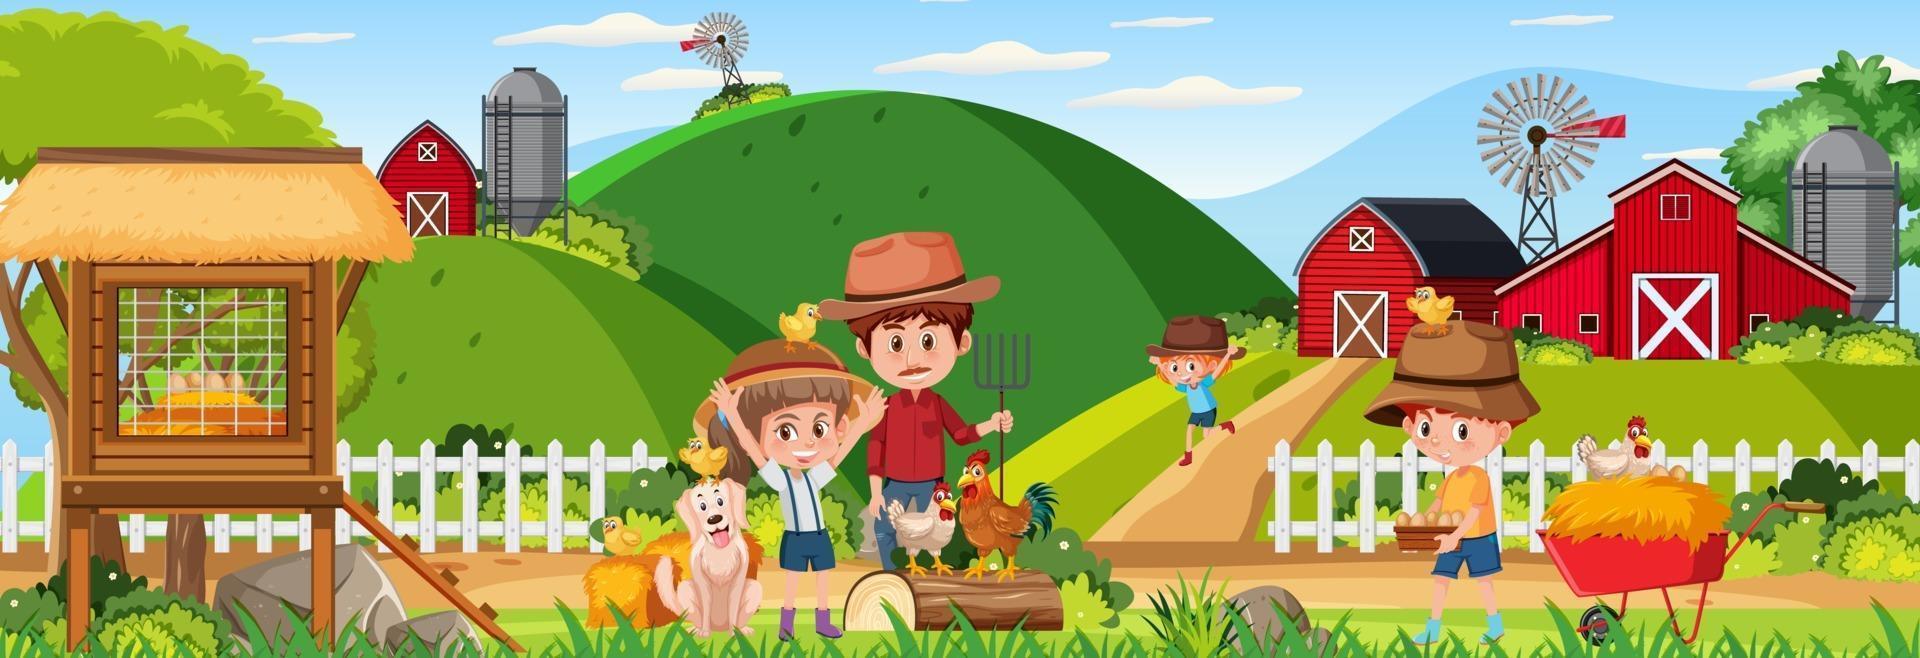 scène de paysage horizontal de ferme avec personnage de dessin animé pour enfants vecteur